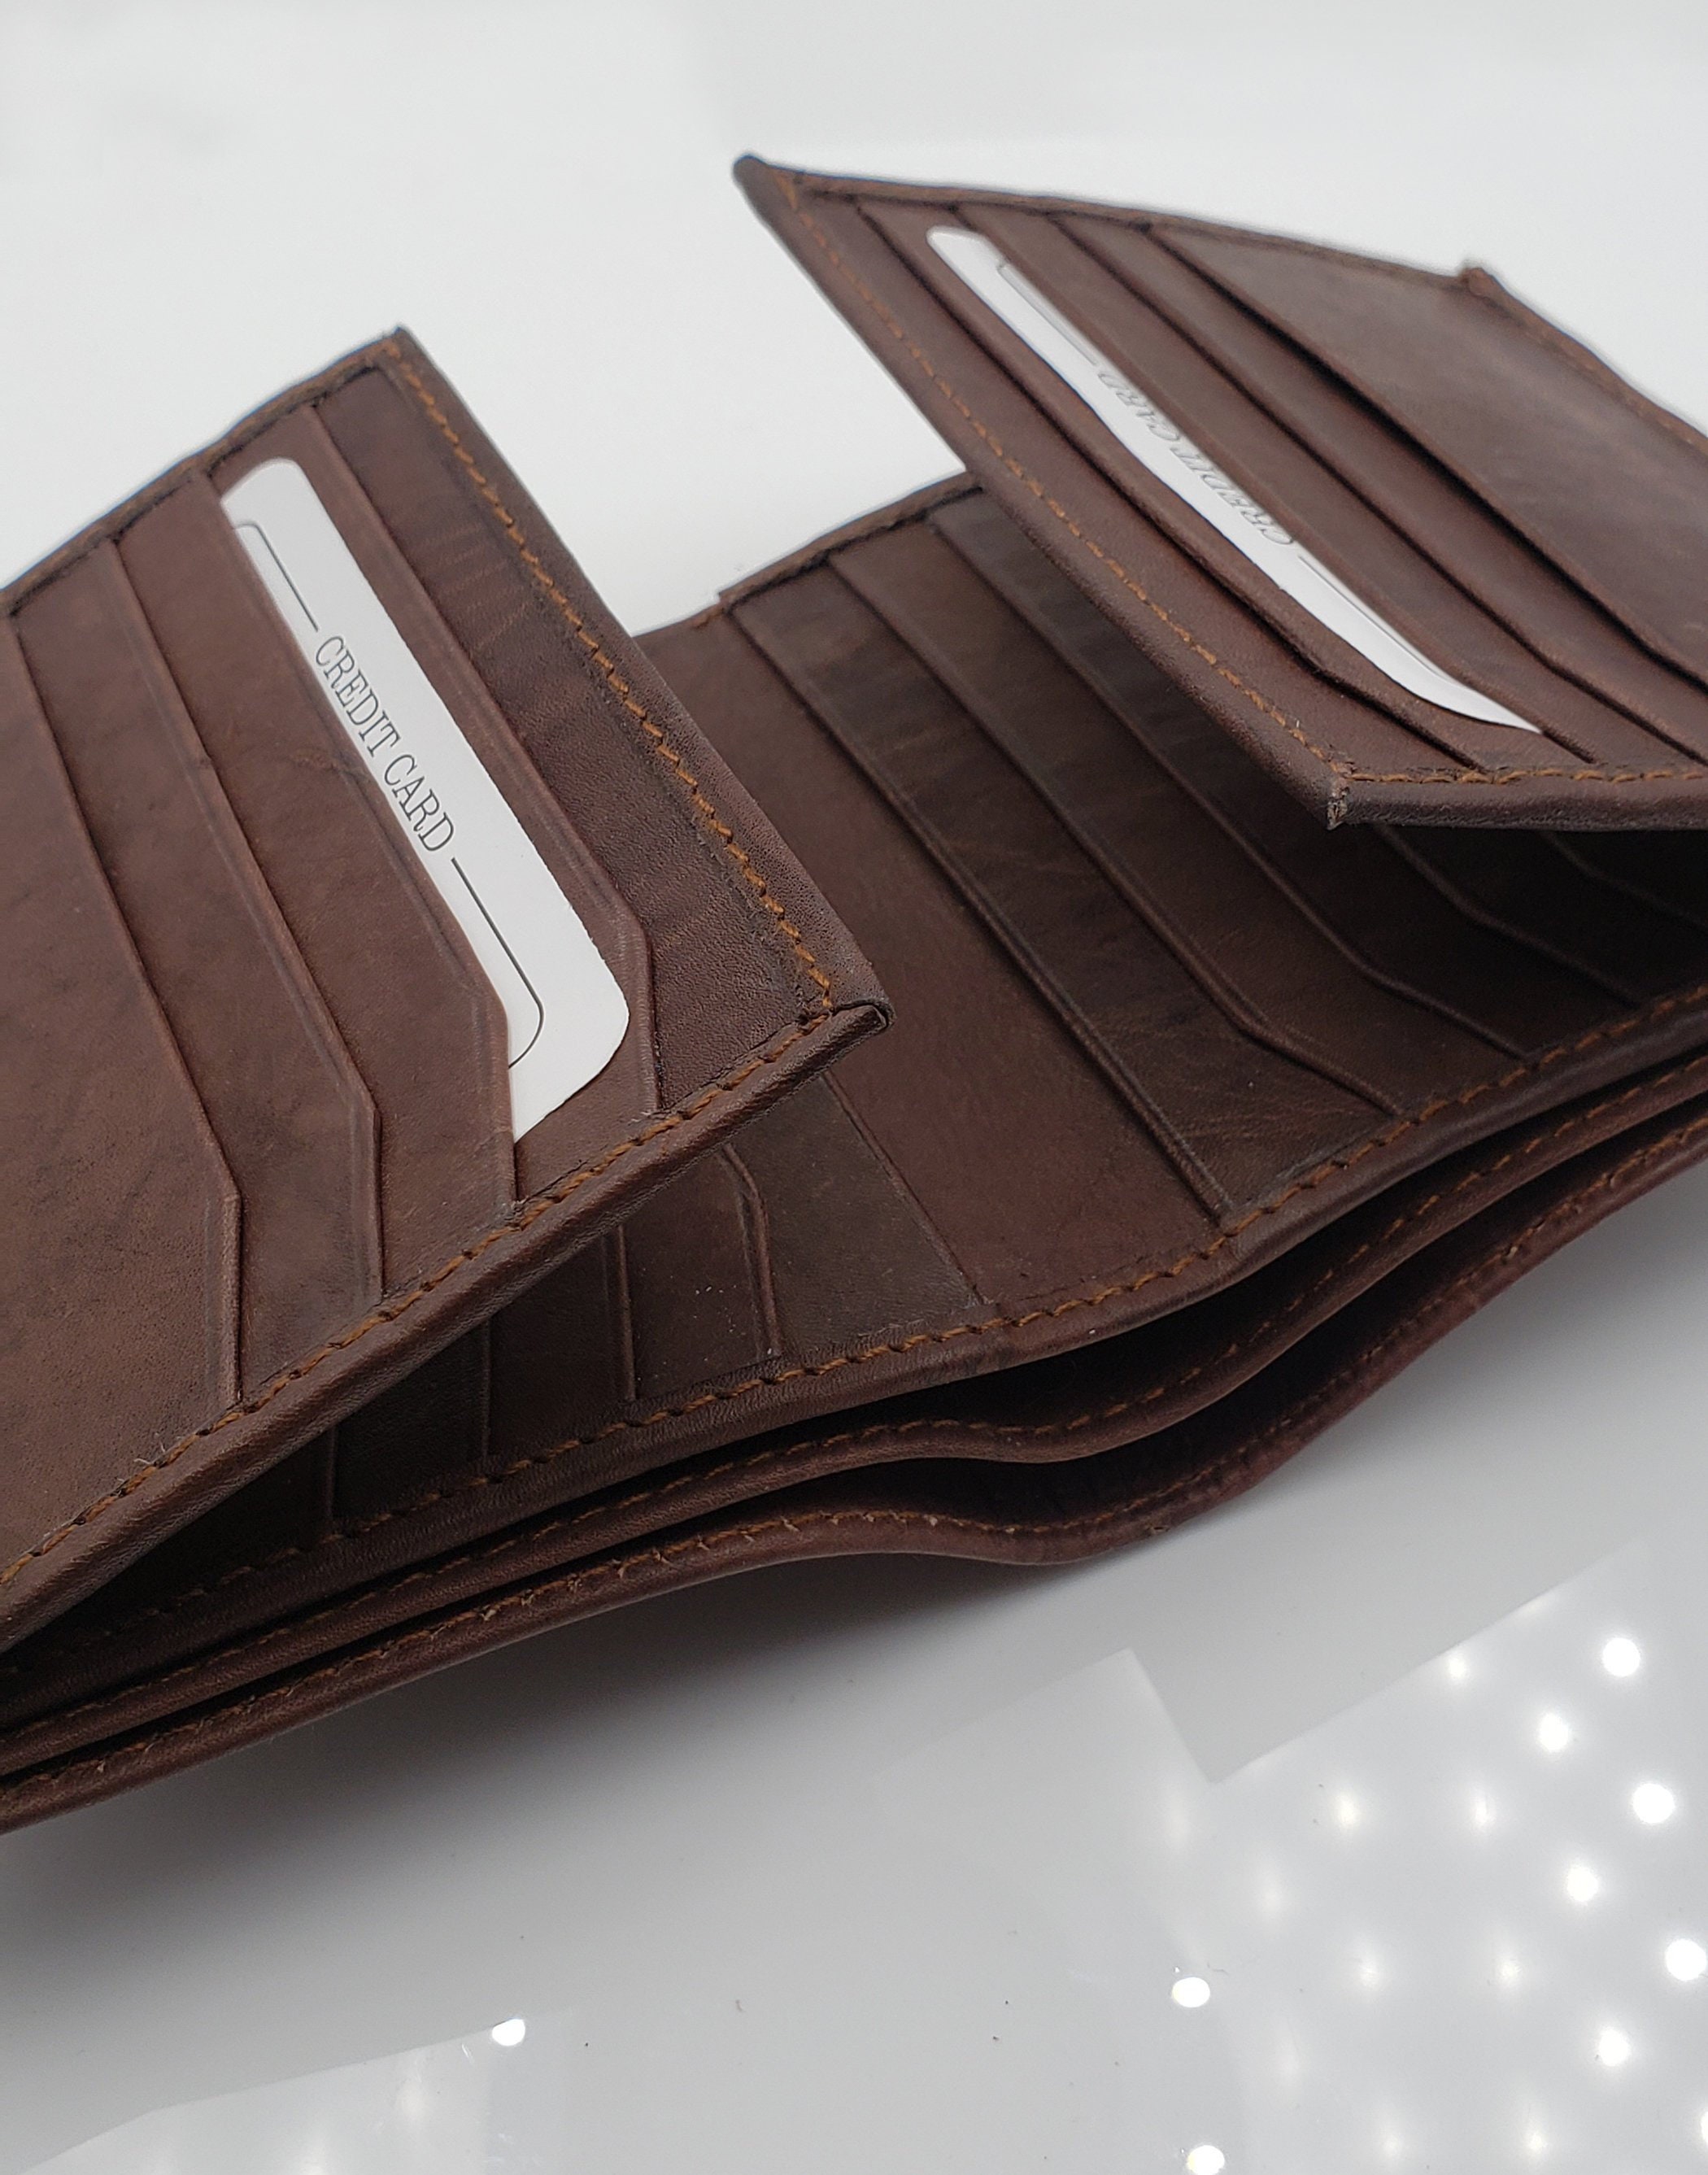 Hipster Leather Wallet For Men Euro Size Bifold Wallet Black Center Fl